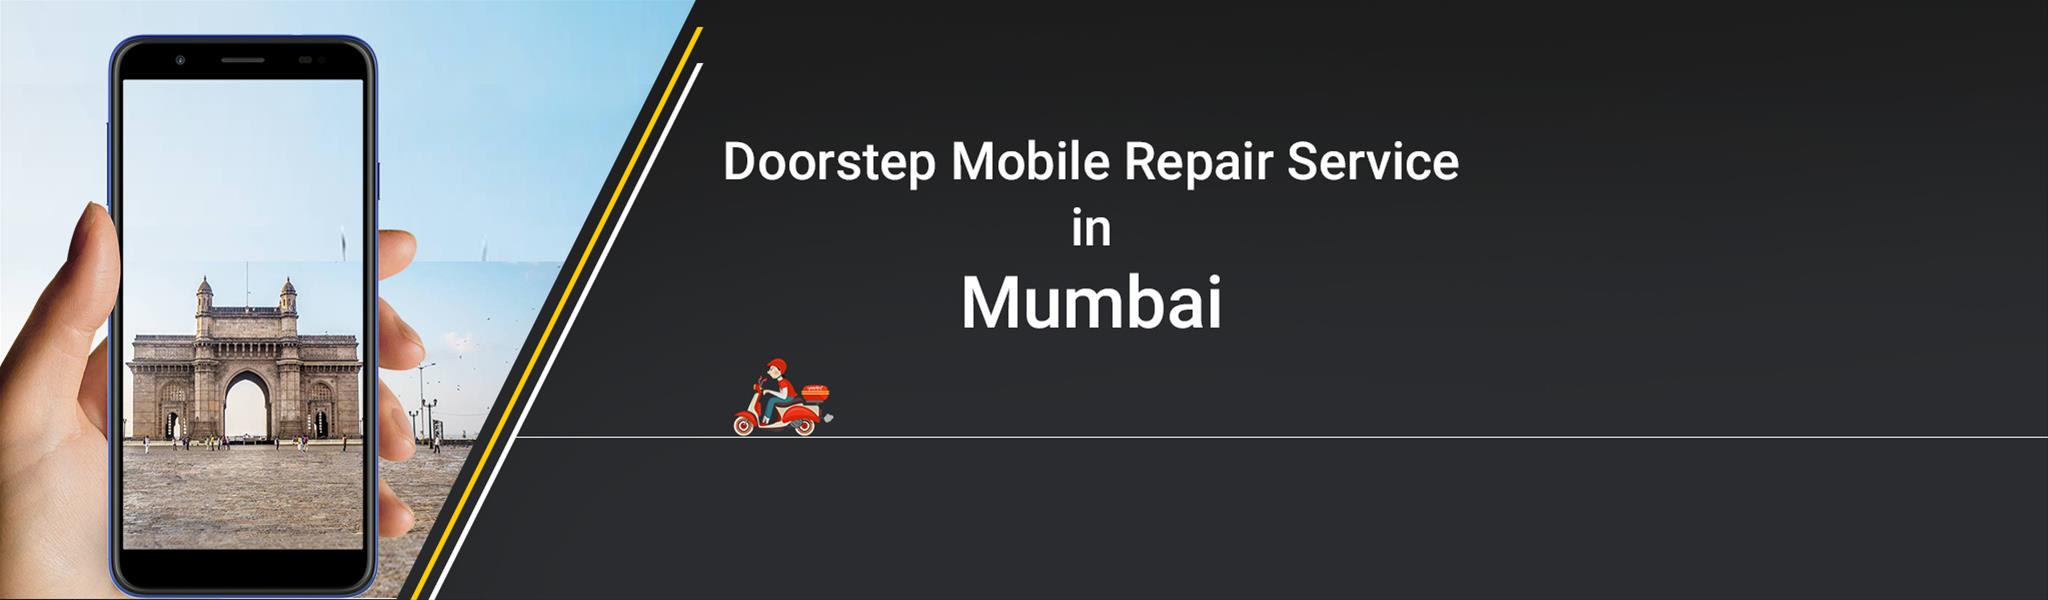 mobile-repair-in-mumbai.jpg